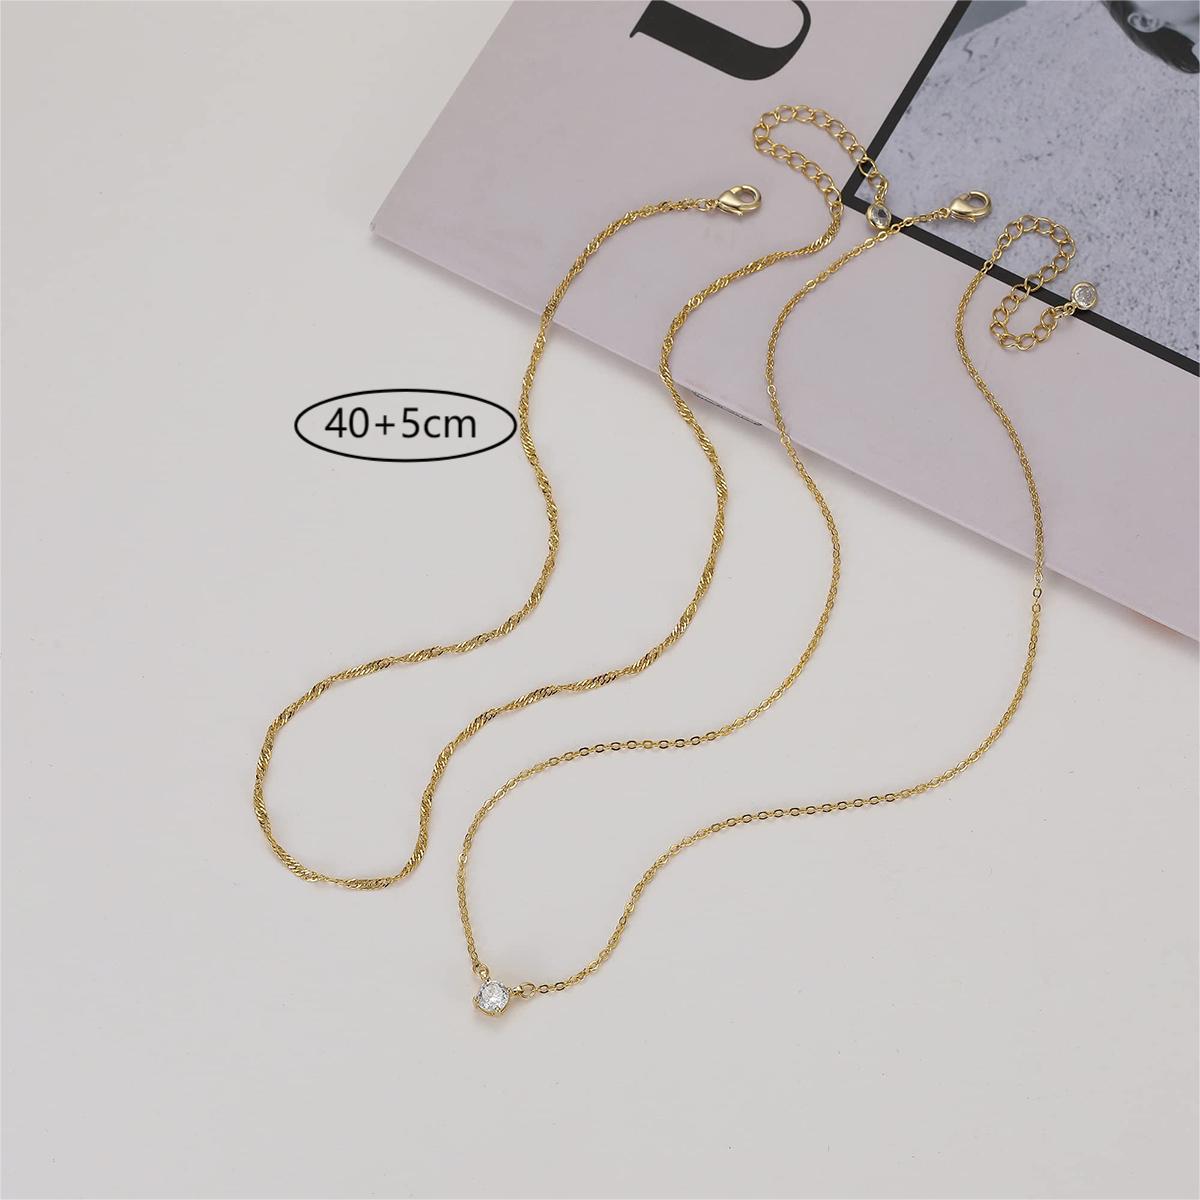 Bulk Diamond Necklaces for Women Detachable Trendy Gold Double-Layer Necklaces Pendant Necklace Gifts Wholesale